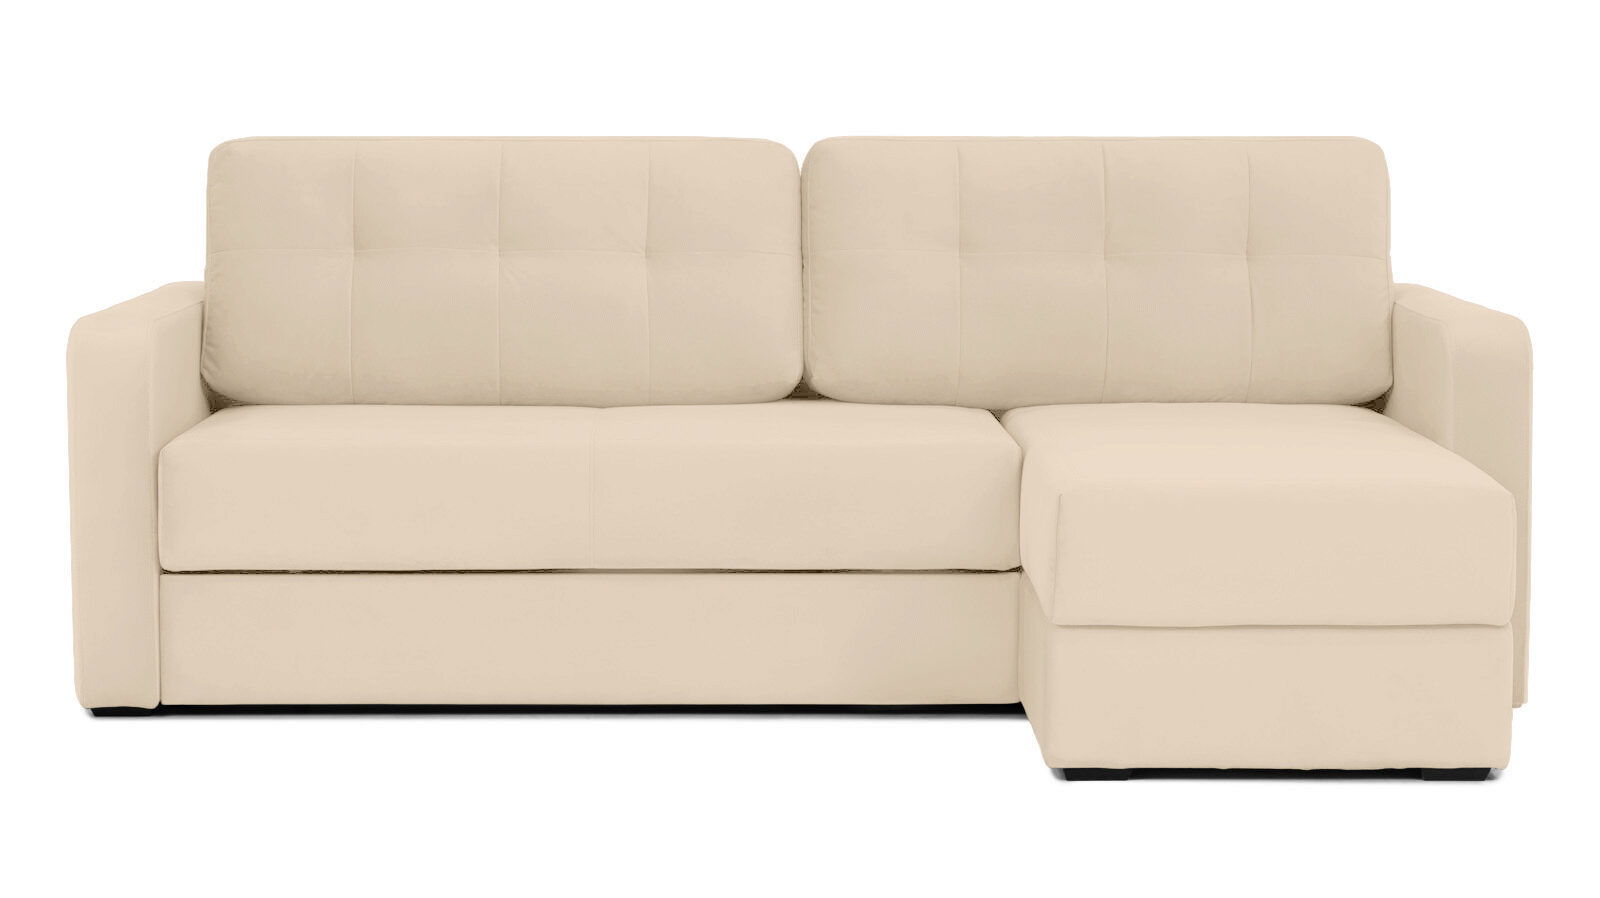 Угловой диван Loko Pro с широкими подлокотниками, с матрасом комбинированной жесткости Askona - фото 1